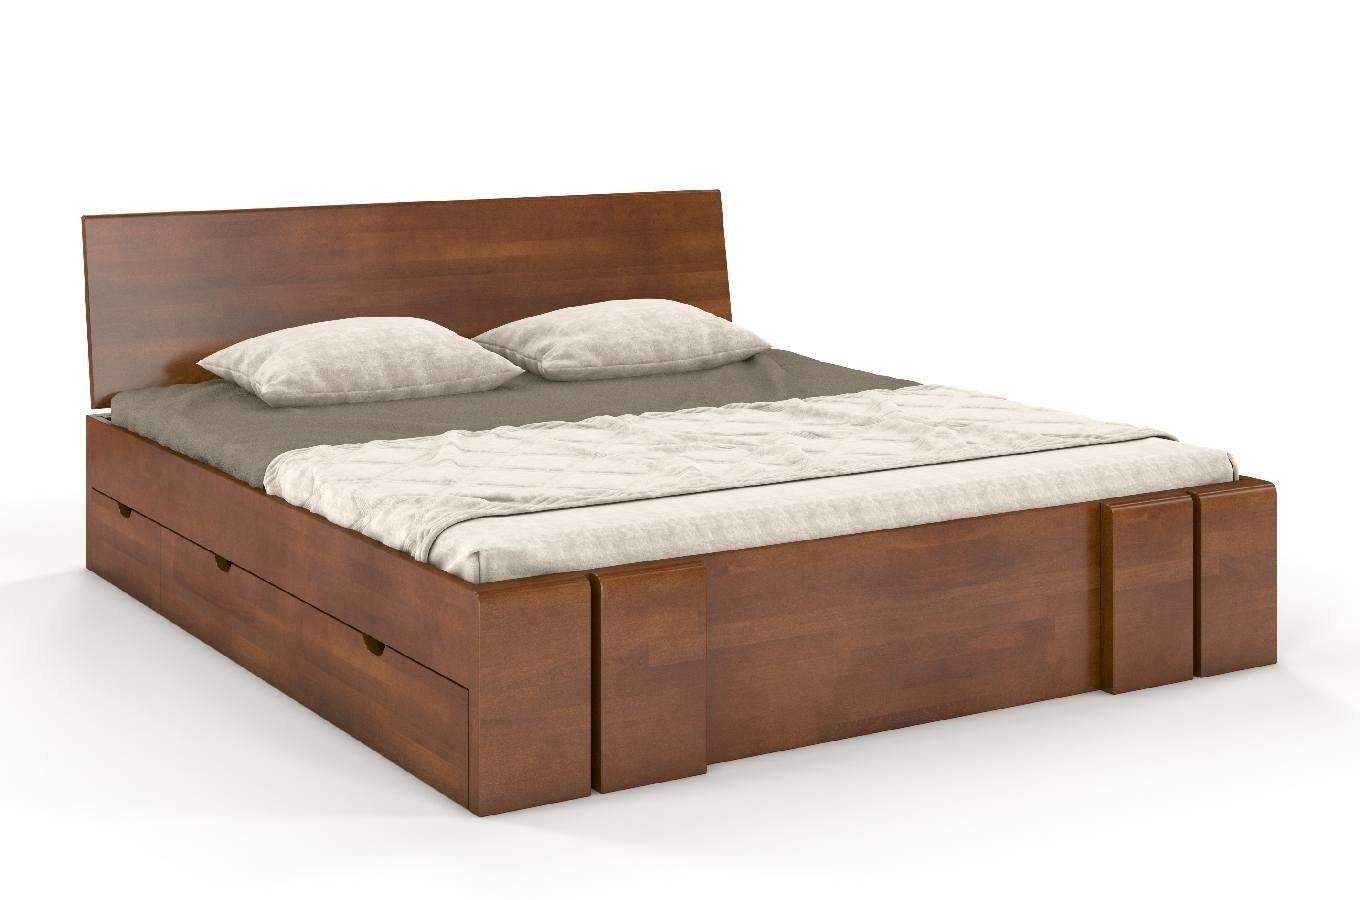 Łóżko drewniane bukowe z szufladami Skandica VESTRE Maxi & DR / 140x20 cm, kolor orzech